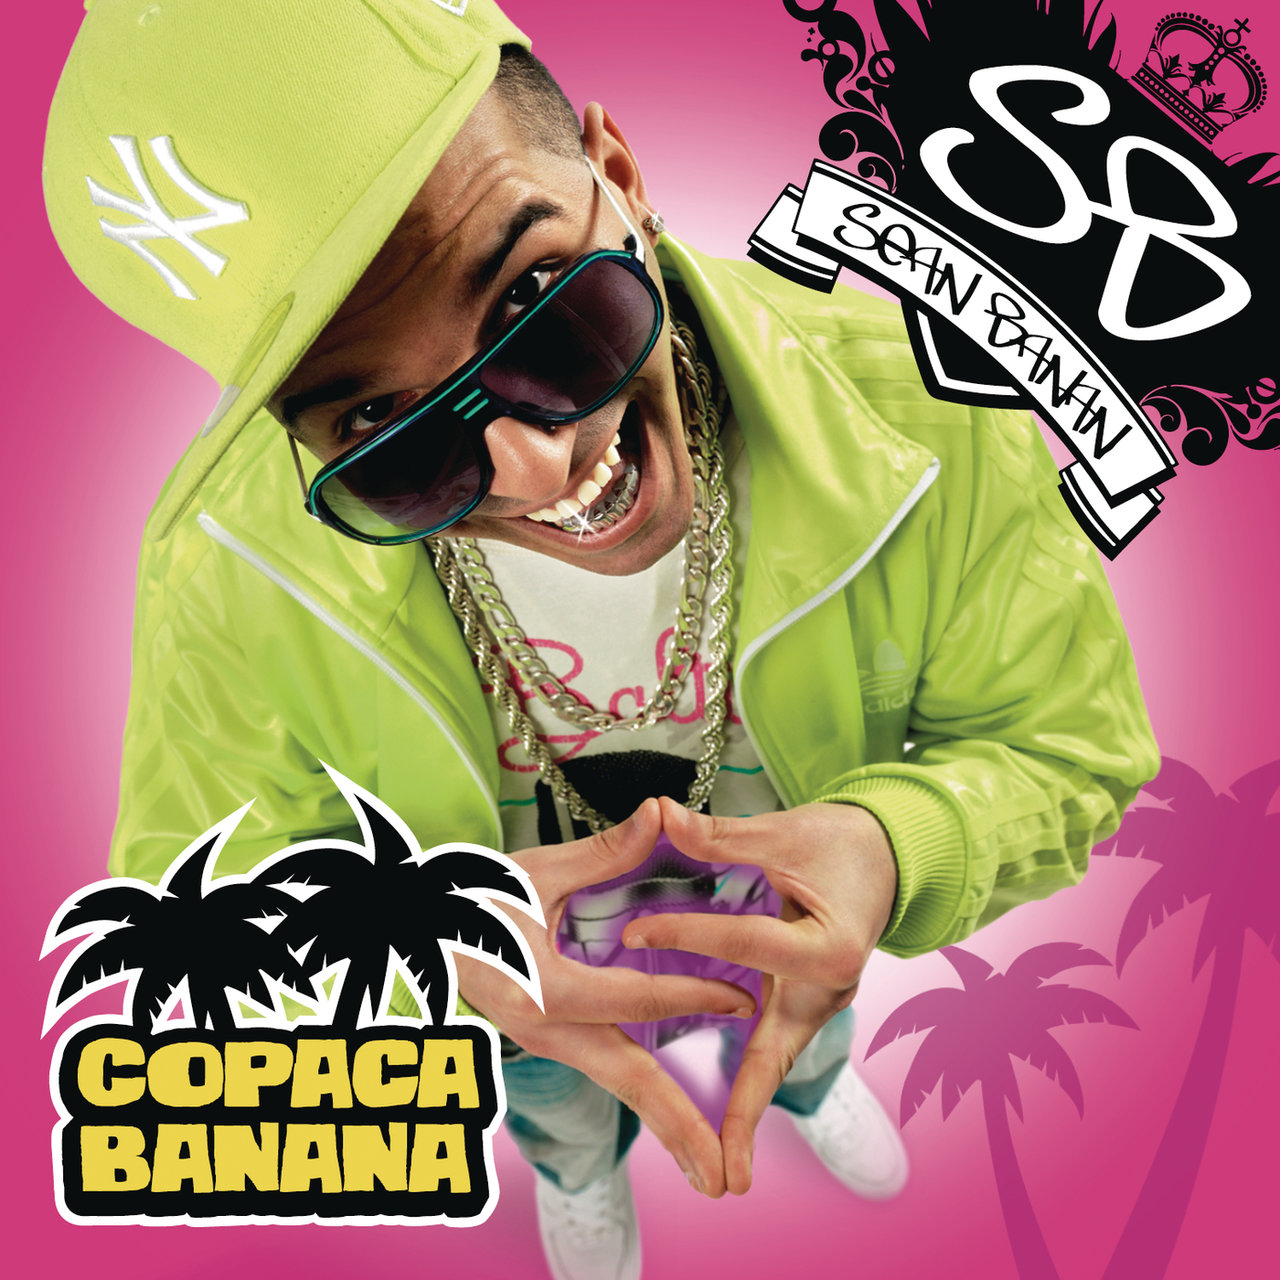 Sean Banan Copacabanana cover artwork